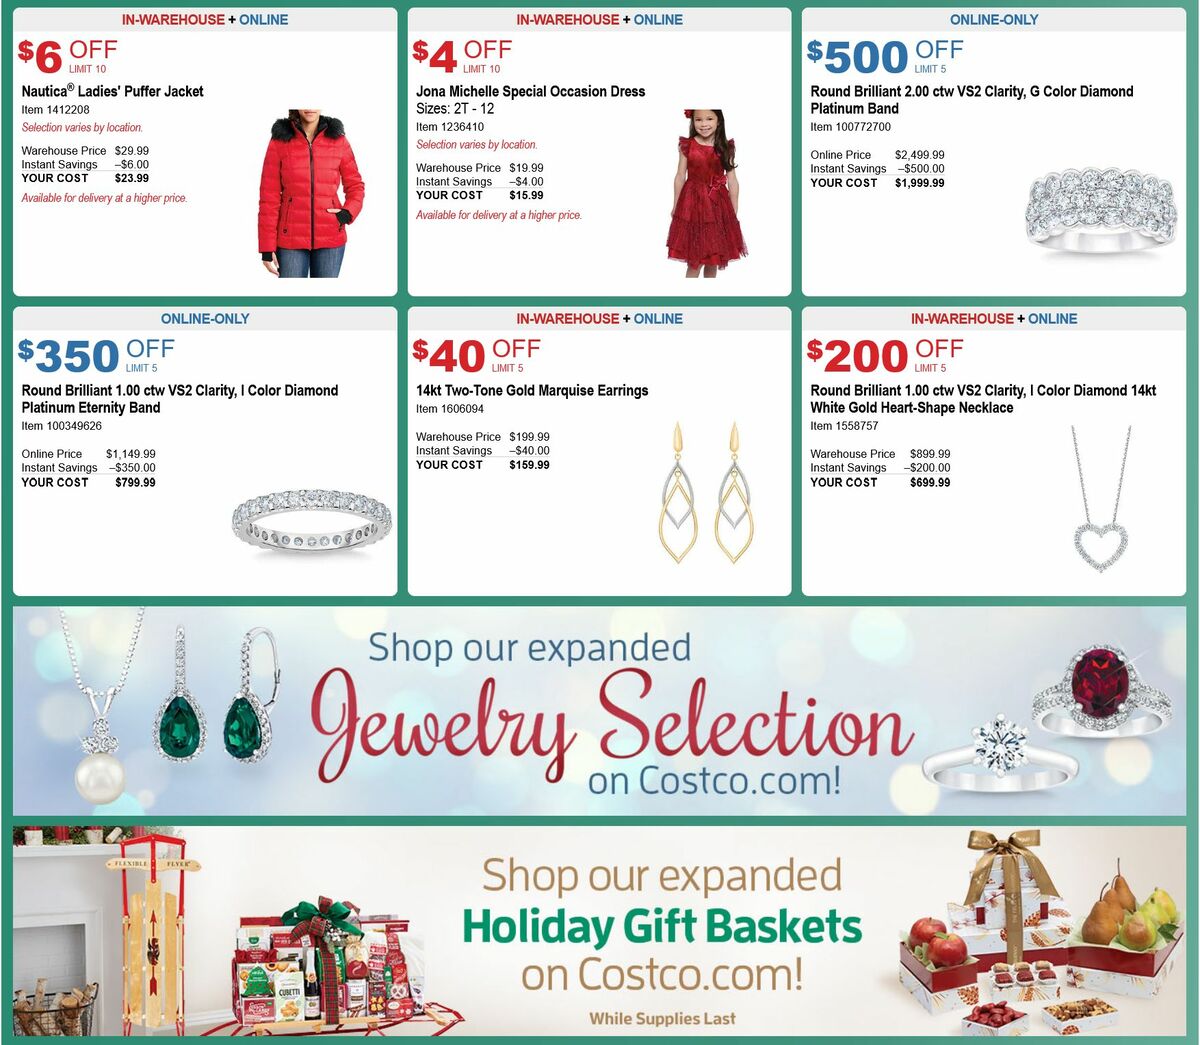 Costco Holiday Savings Weekly Ad from November 1